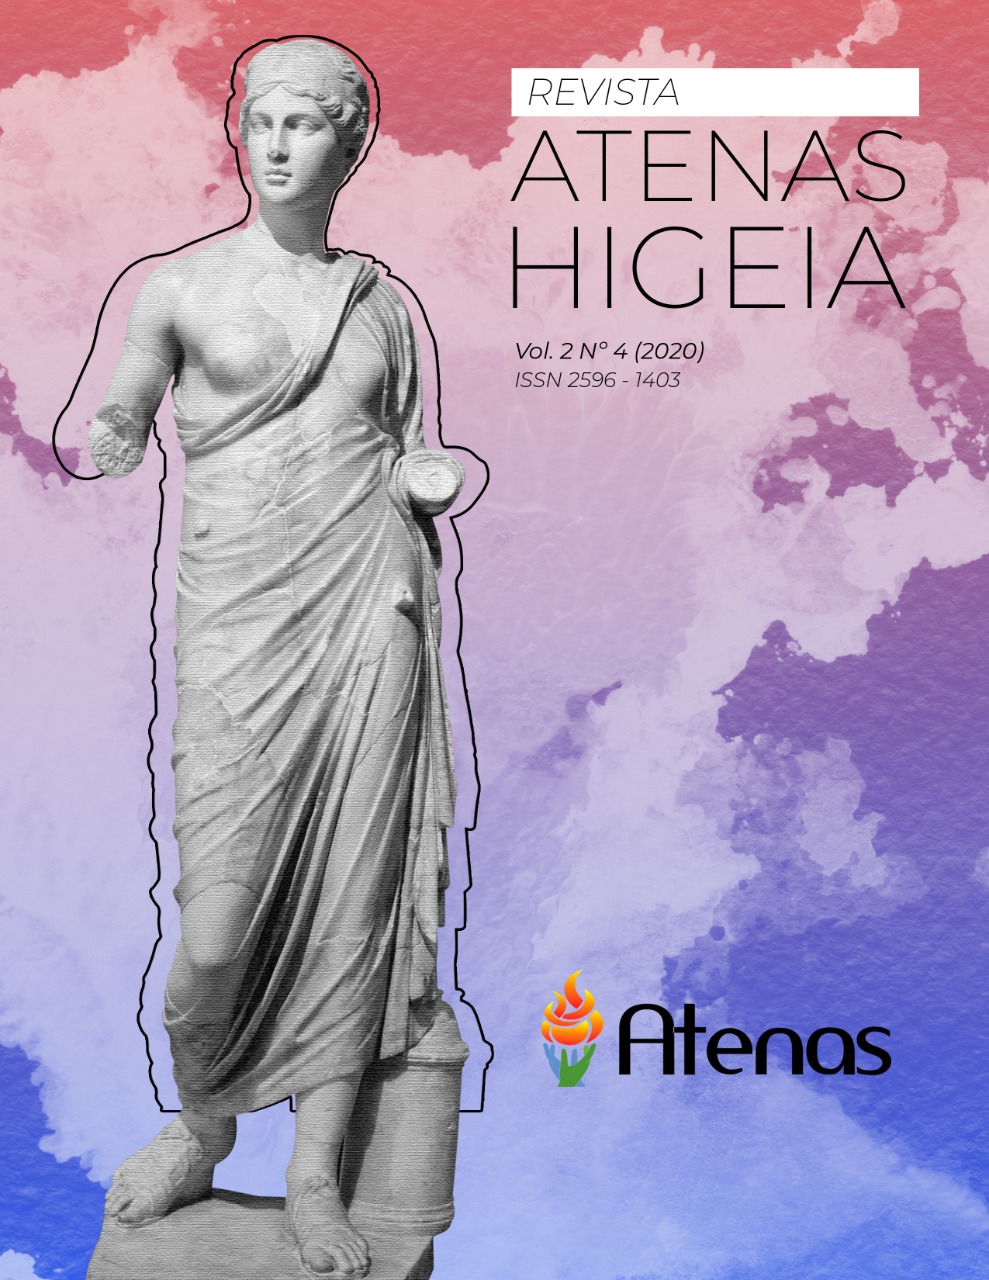 					Visualizar v. 2 n. 4 (2020): Revista Atenas Higeia
				